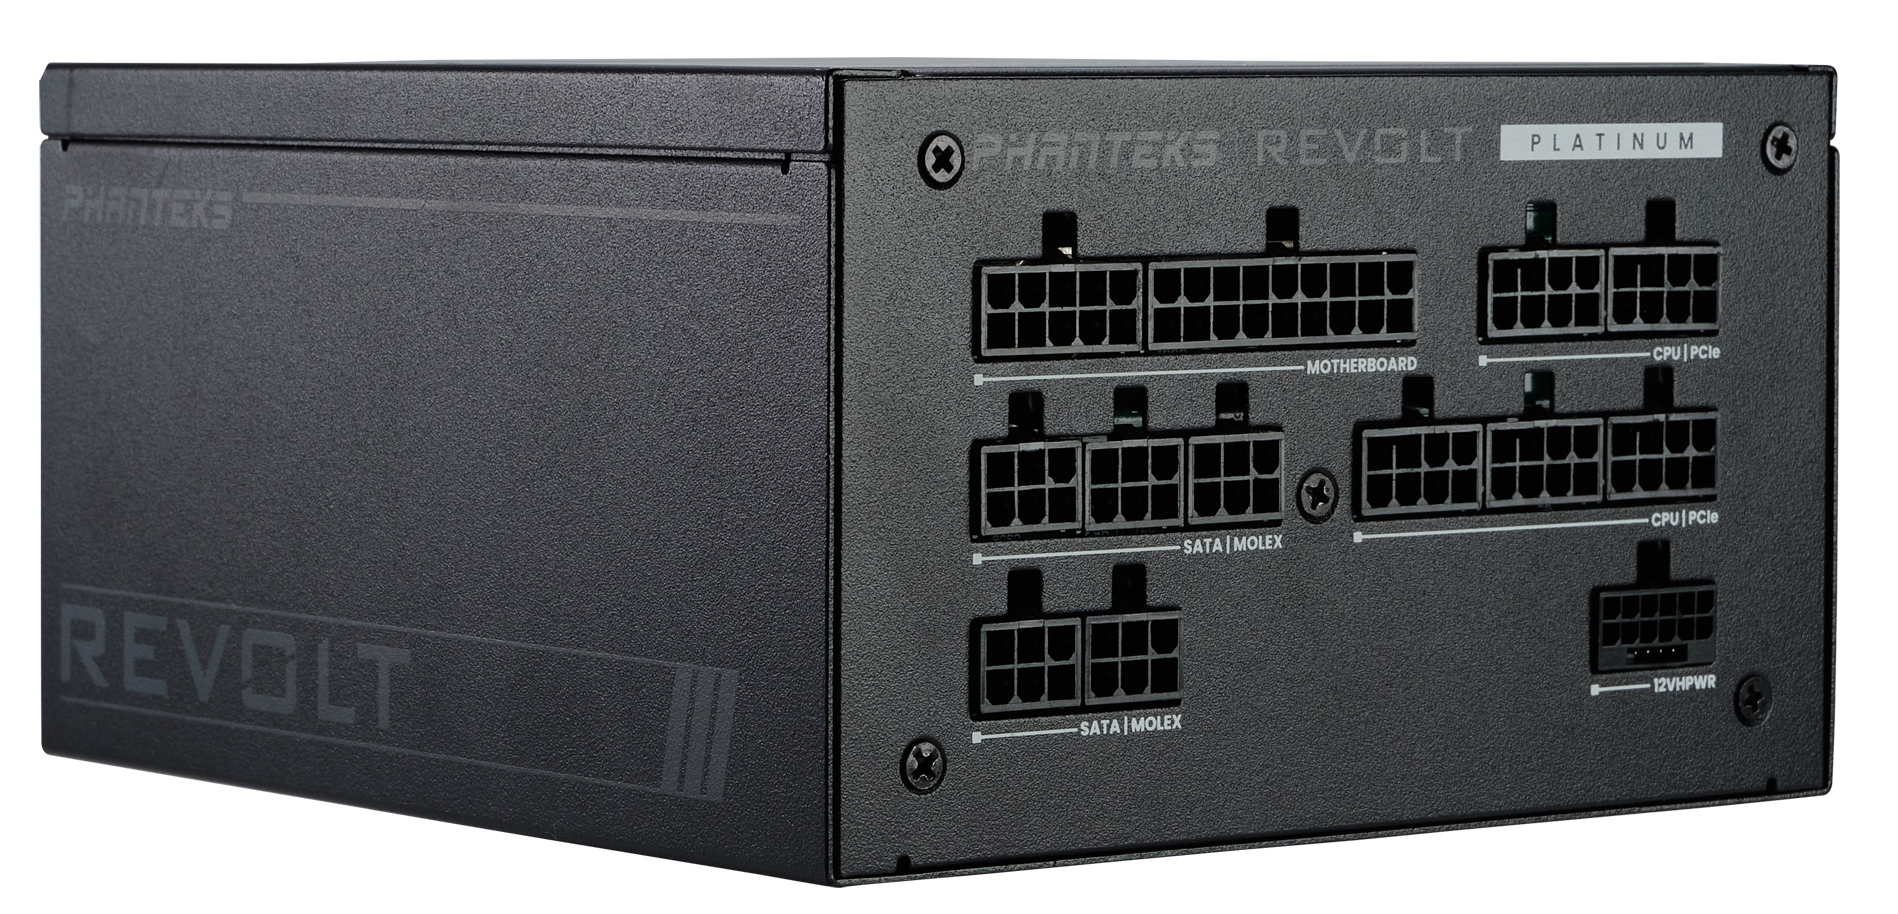 Fuente Modular Phanteks Revolt ATX 3.0 PCIe 5.0 1200W Platinum Preta (Sin Cables Incluídos)